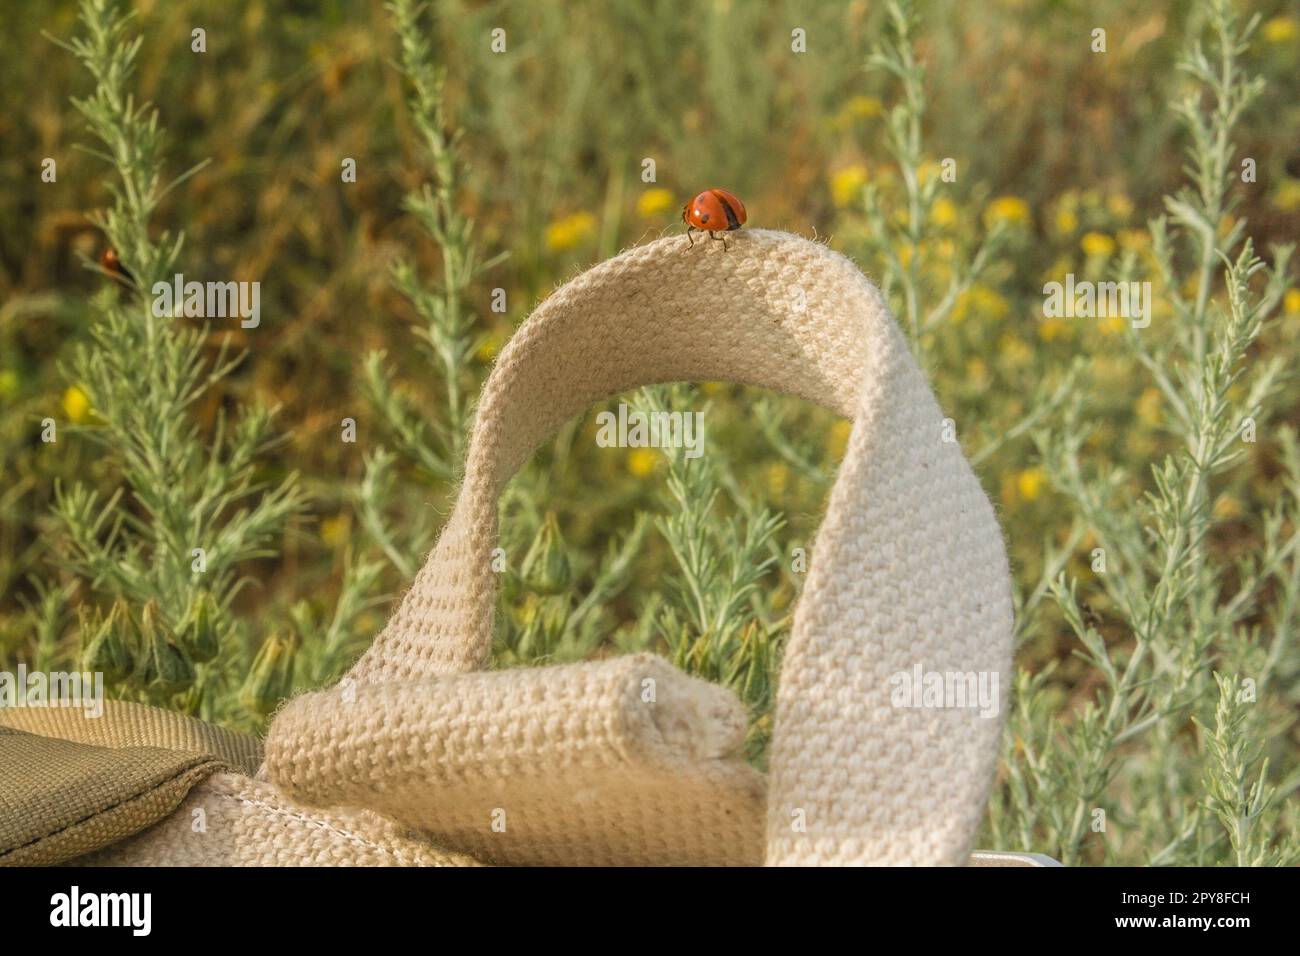 Nahaufnahme des Marienkäfers auf dem Taschengriff im Konzeptfoto des Sommerfeldes Stockfoto